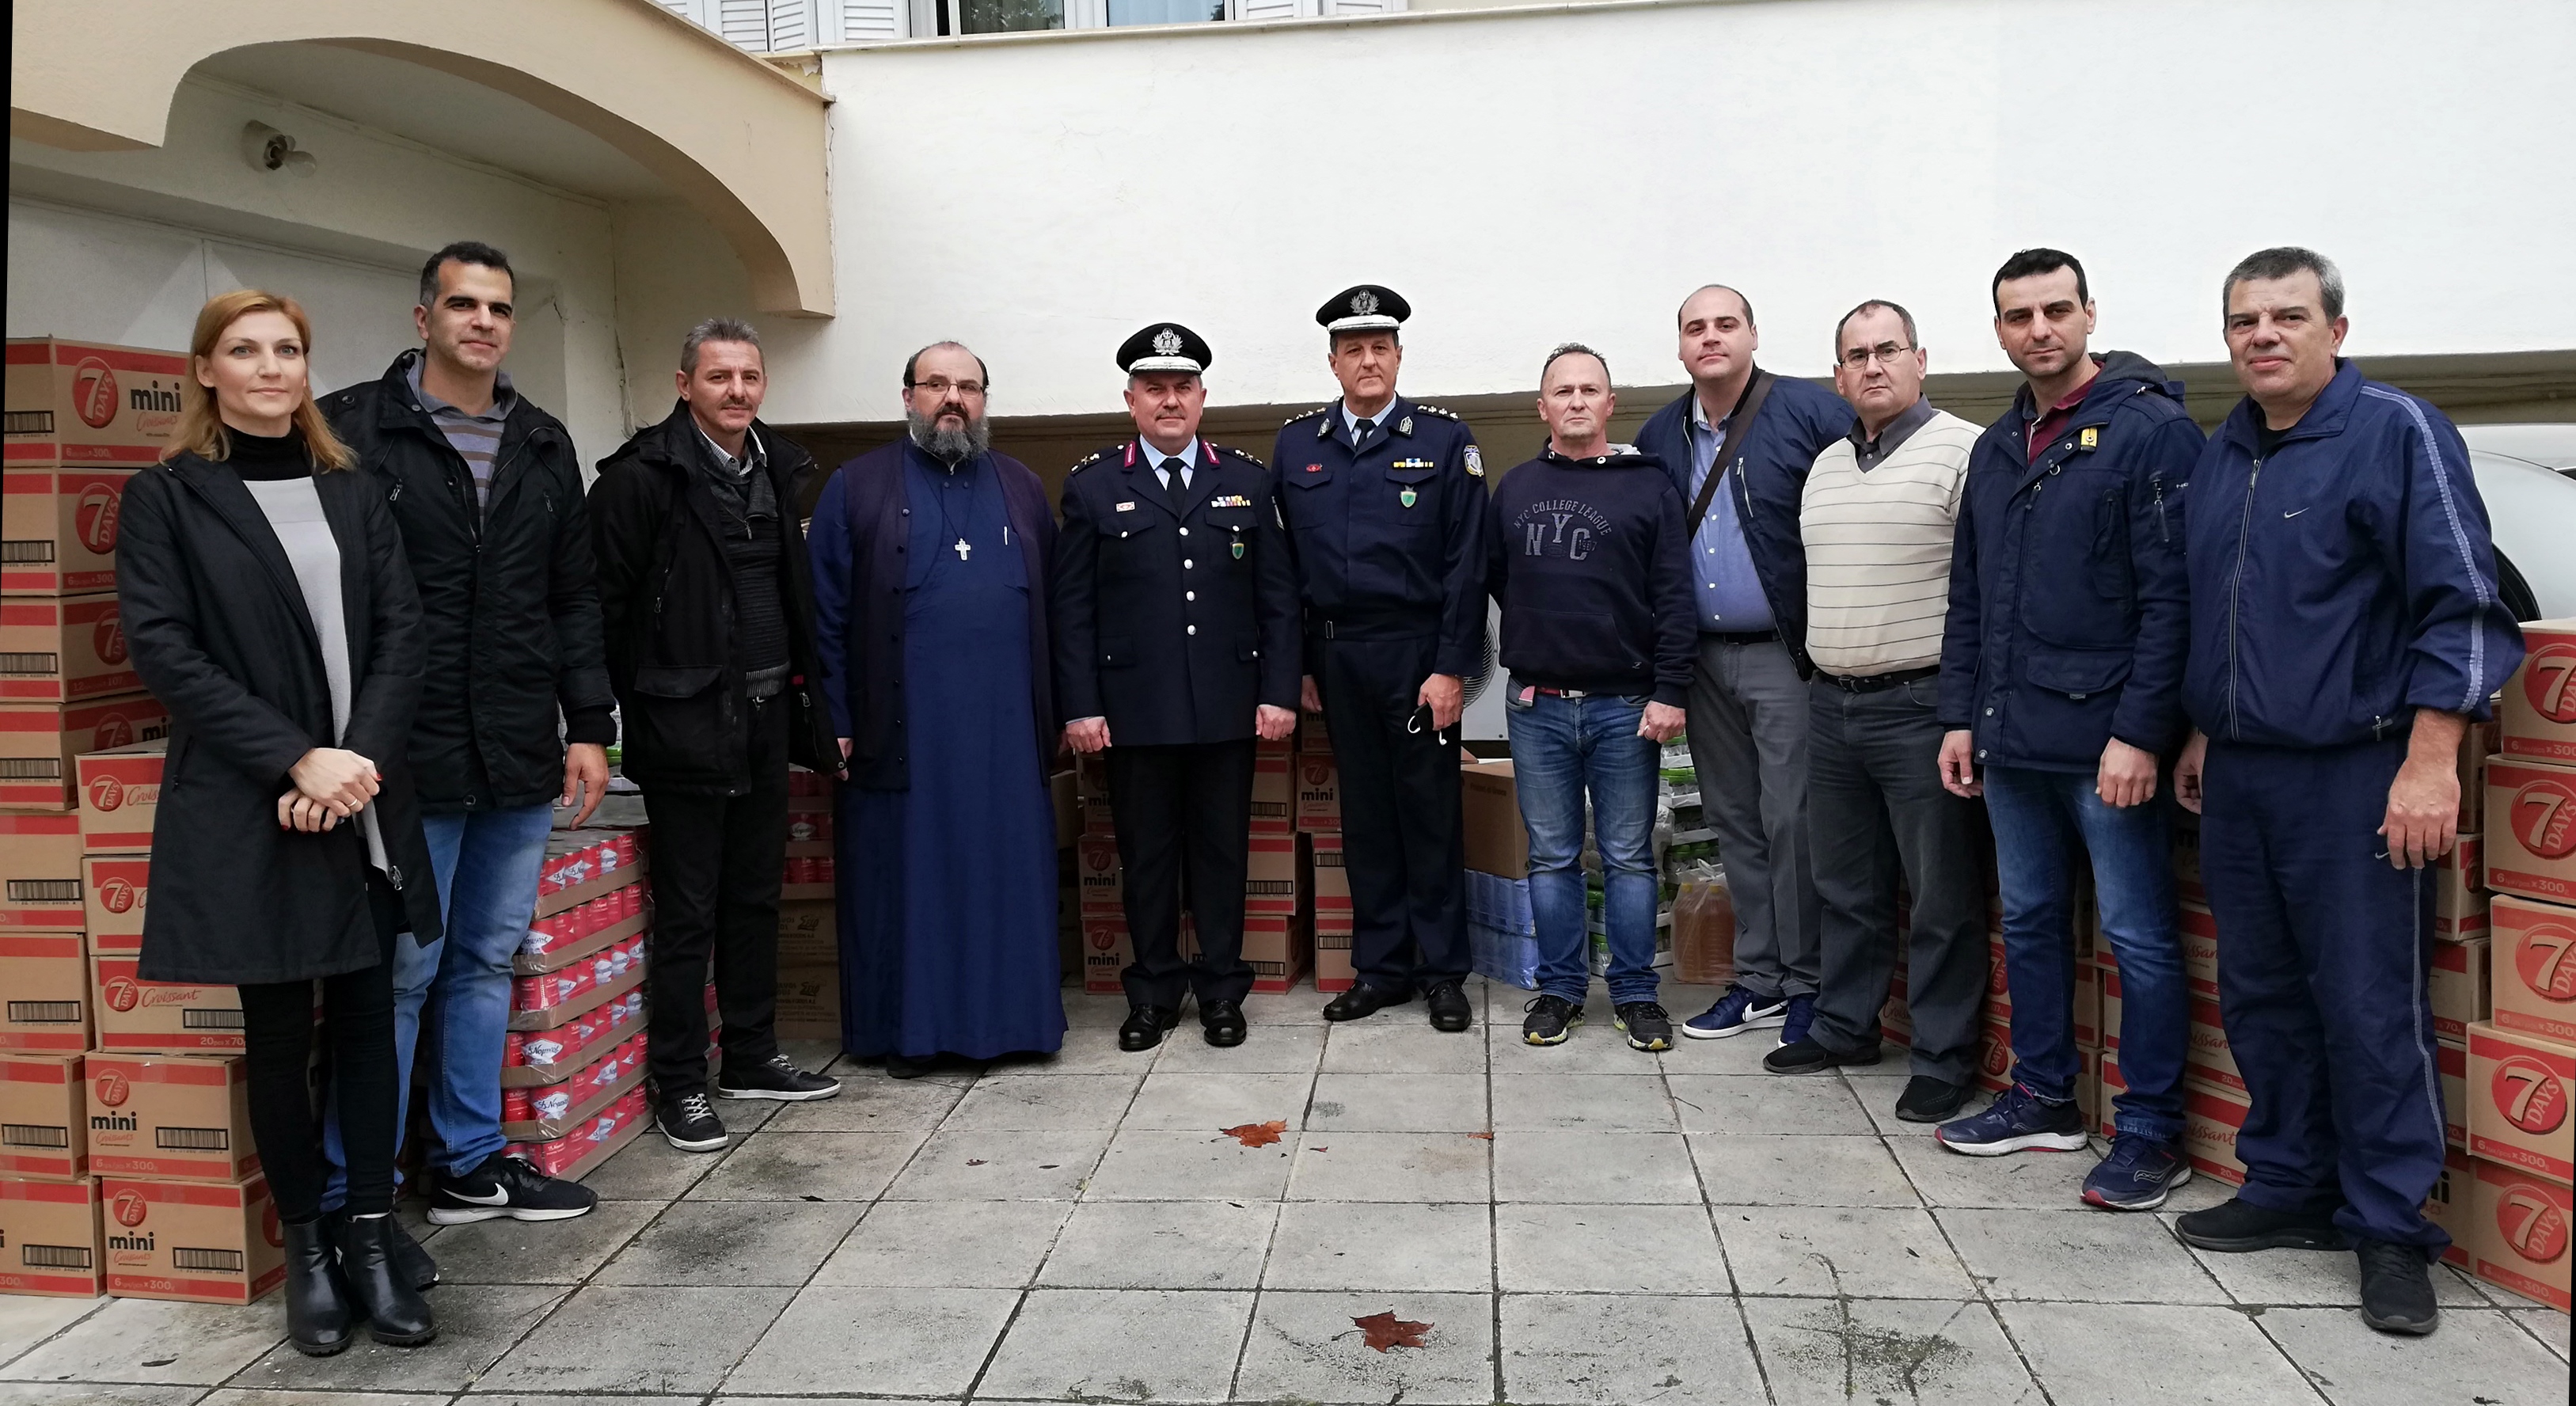 Κοινωνικές δράσεις της Γενικής Περιφερειακής Αστυνομικής Διεύθυνσης Θεσσαλίας 